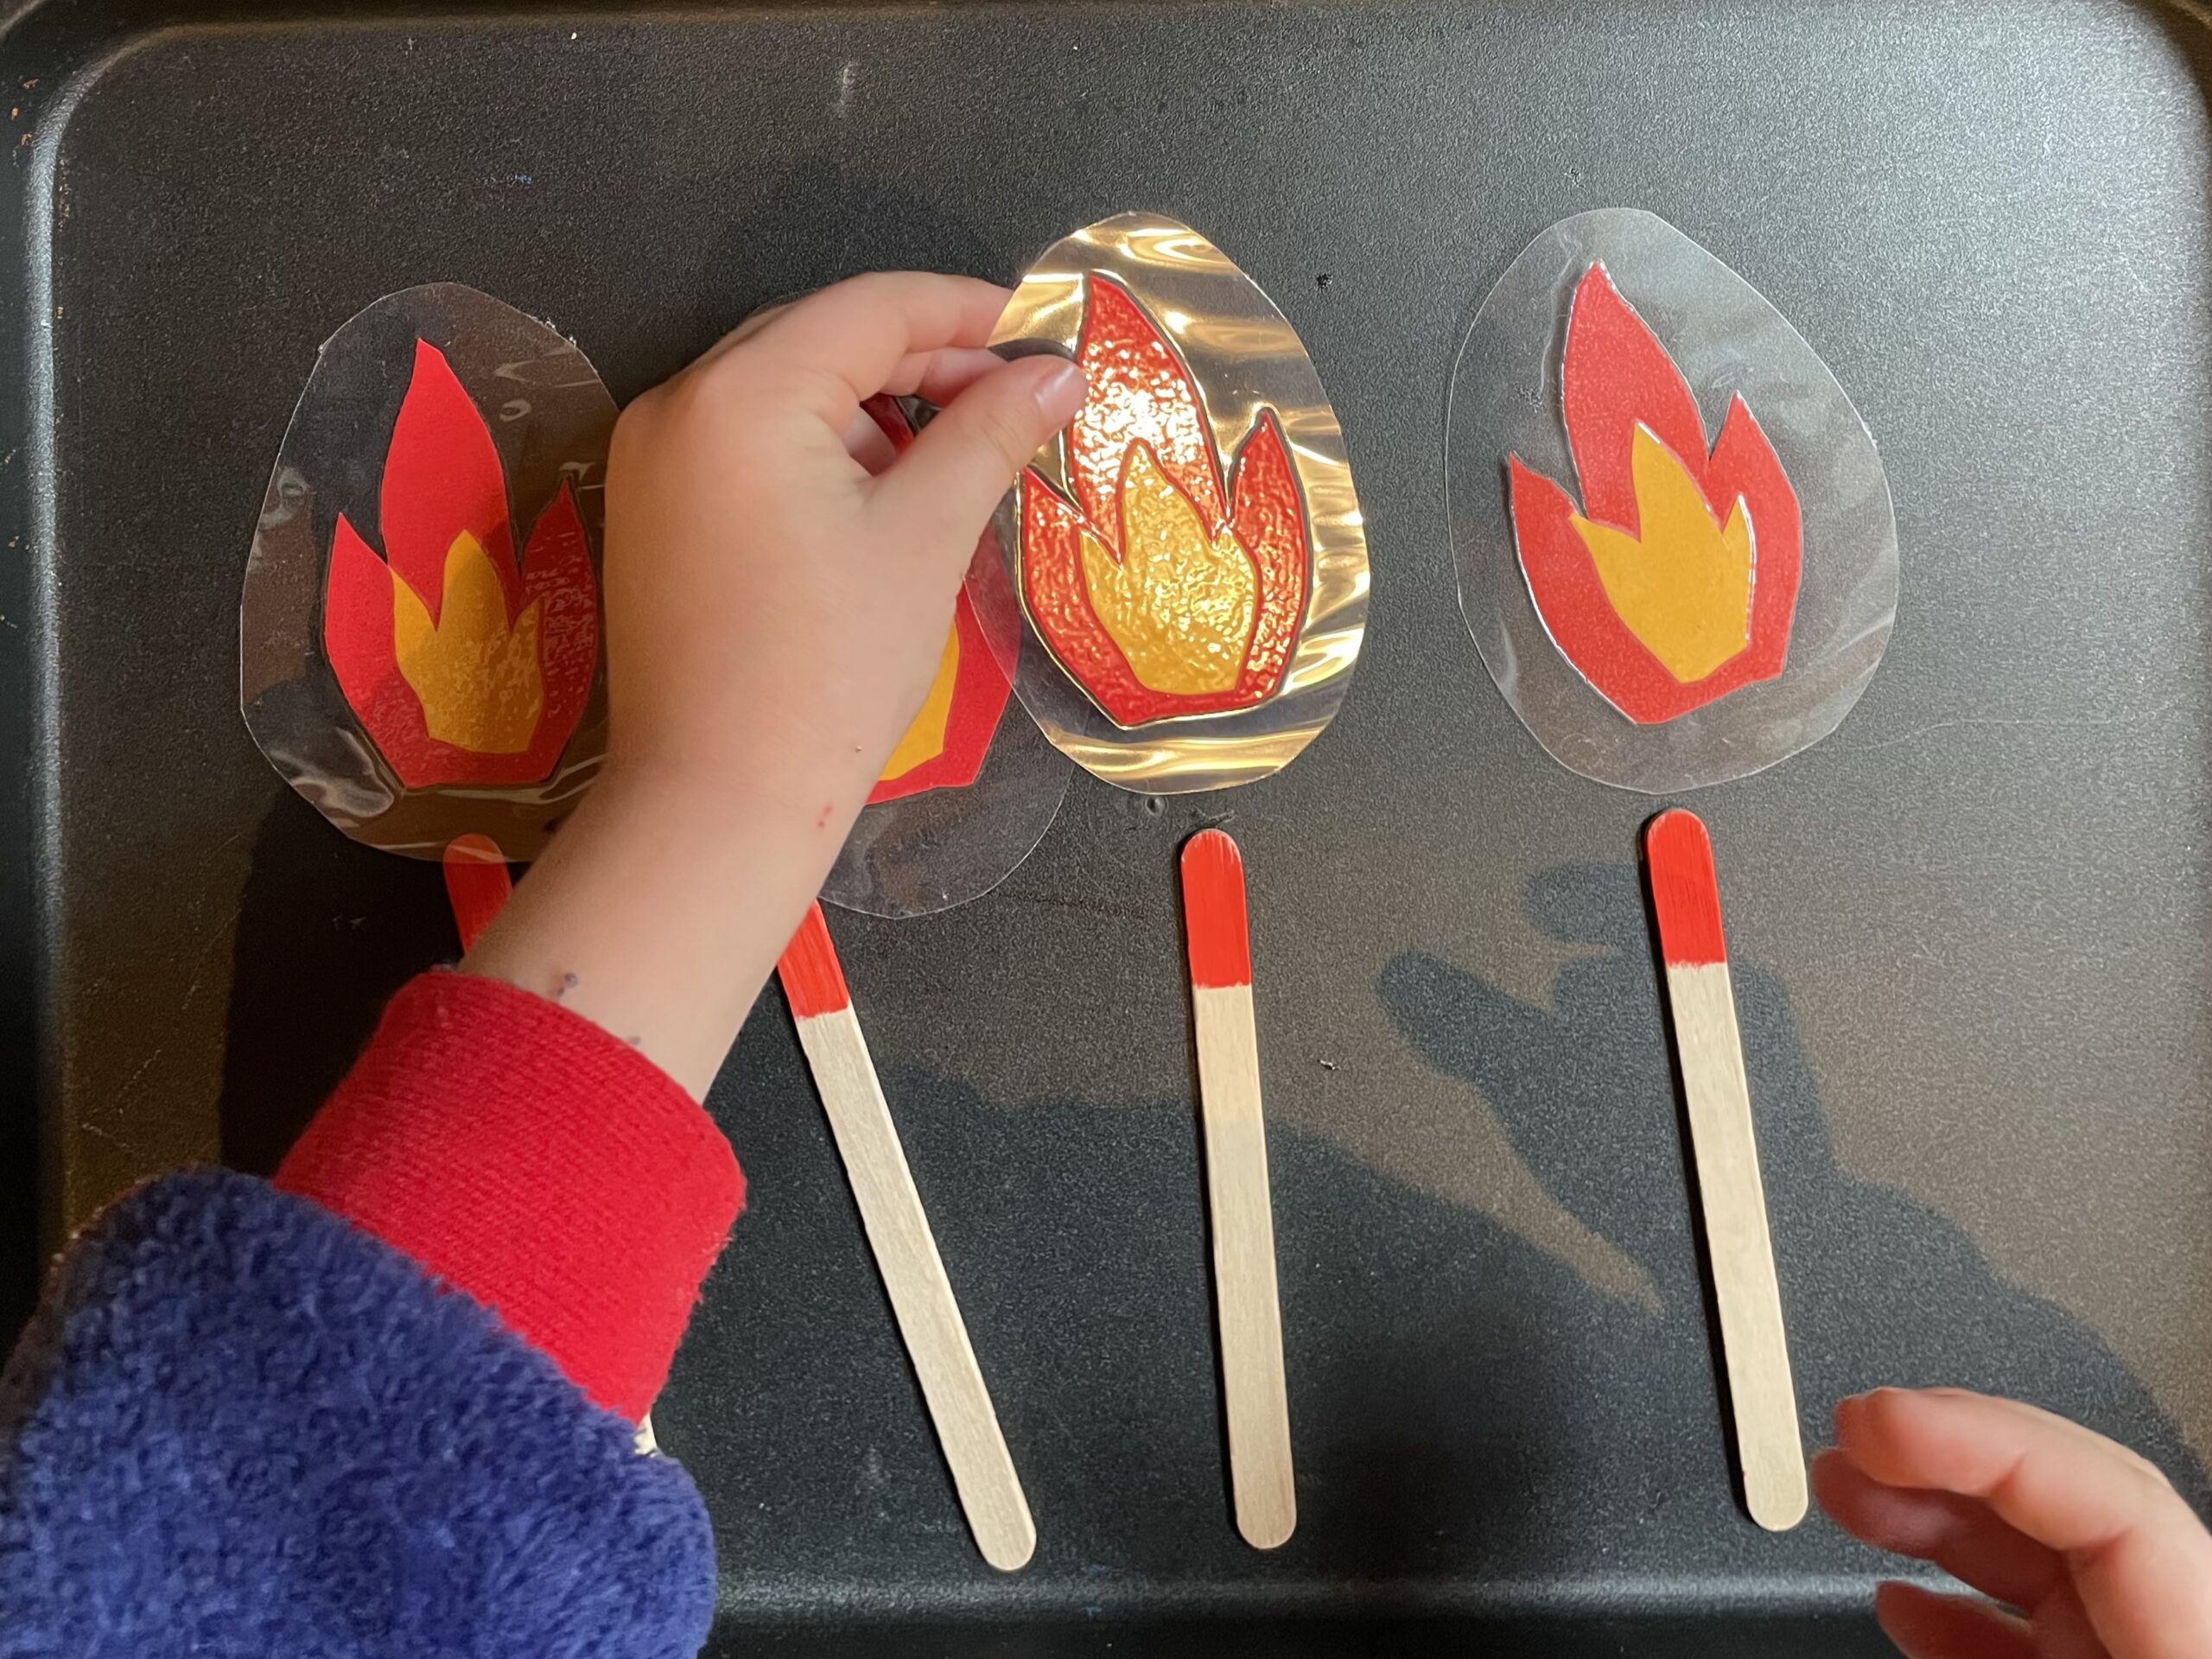 Bild zum Schritt 28 für das Bastel- und DIY-Abenteuer für Kinder: 'Jedes Streichholz bekommt eine Flamme.'